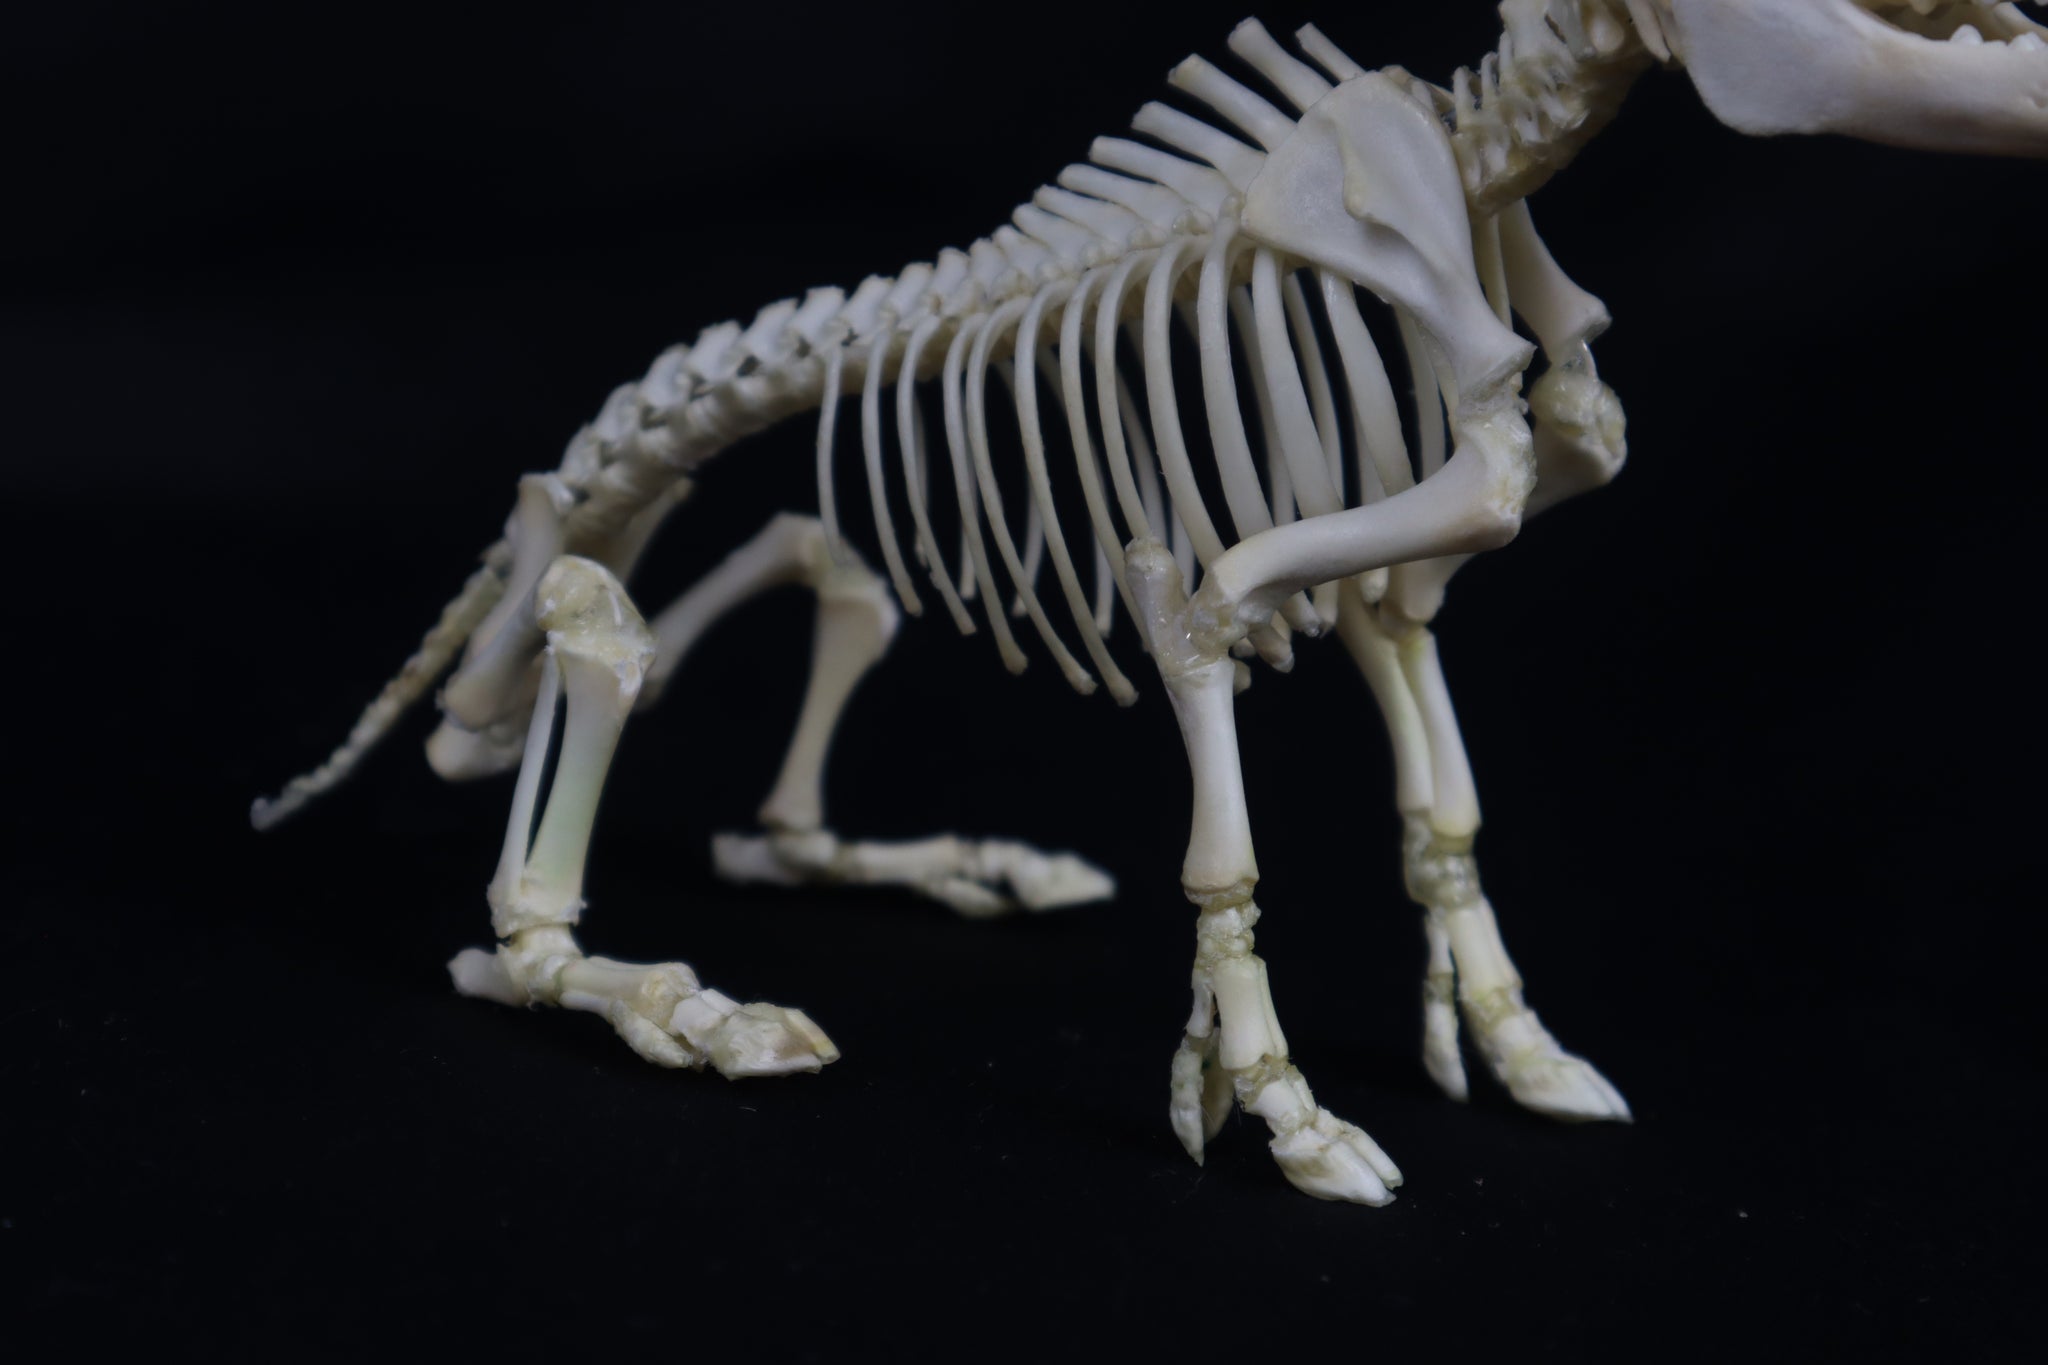 Articulated Piglet Skeleton